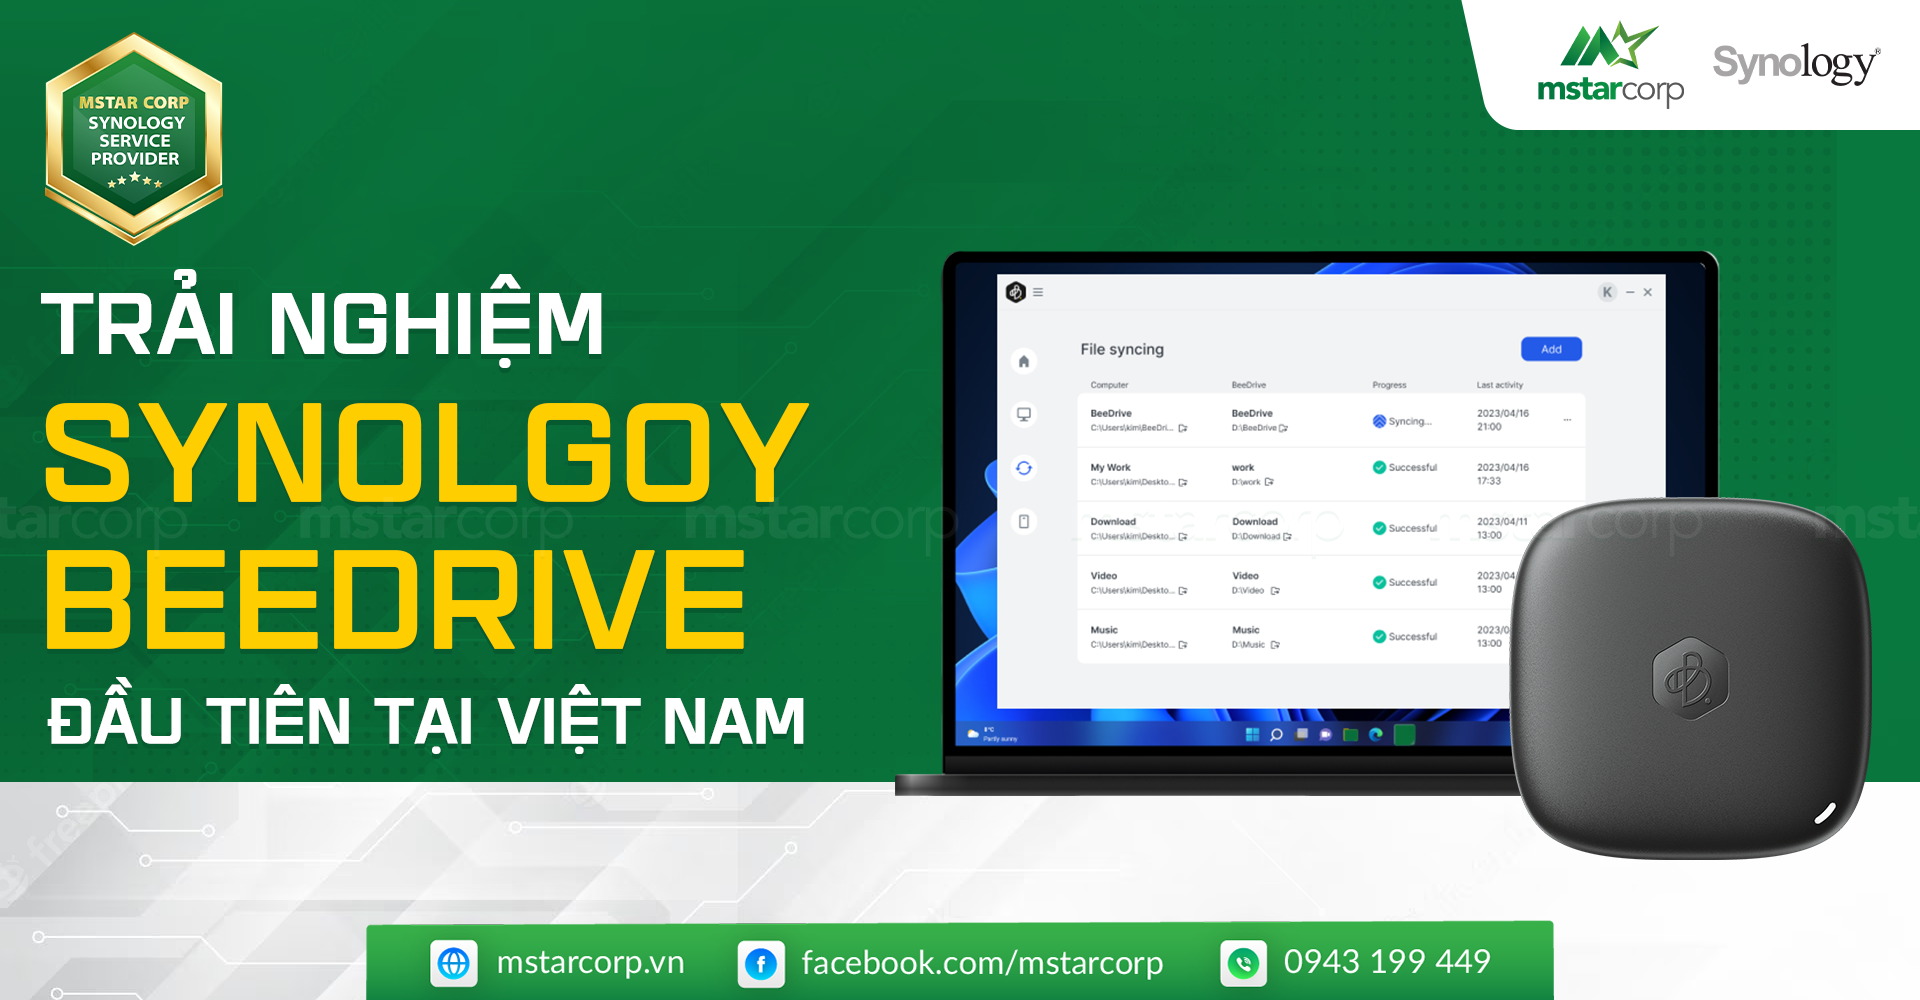 Mstar Corp trải nghiệm thiết bị Synology BeeDrive đầu tiên tại Việt Nam